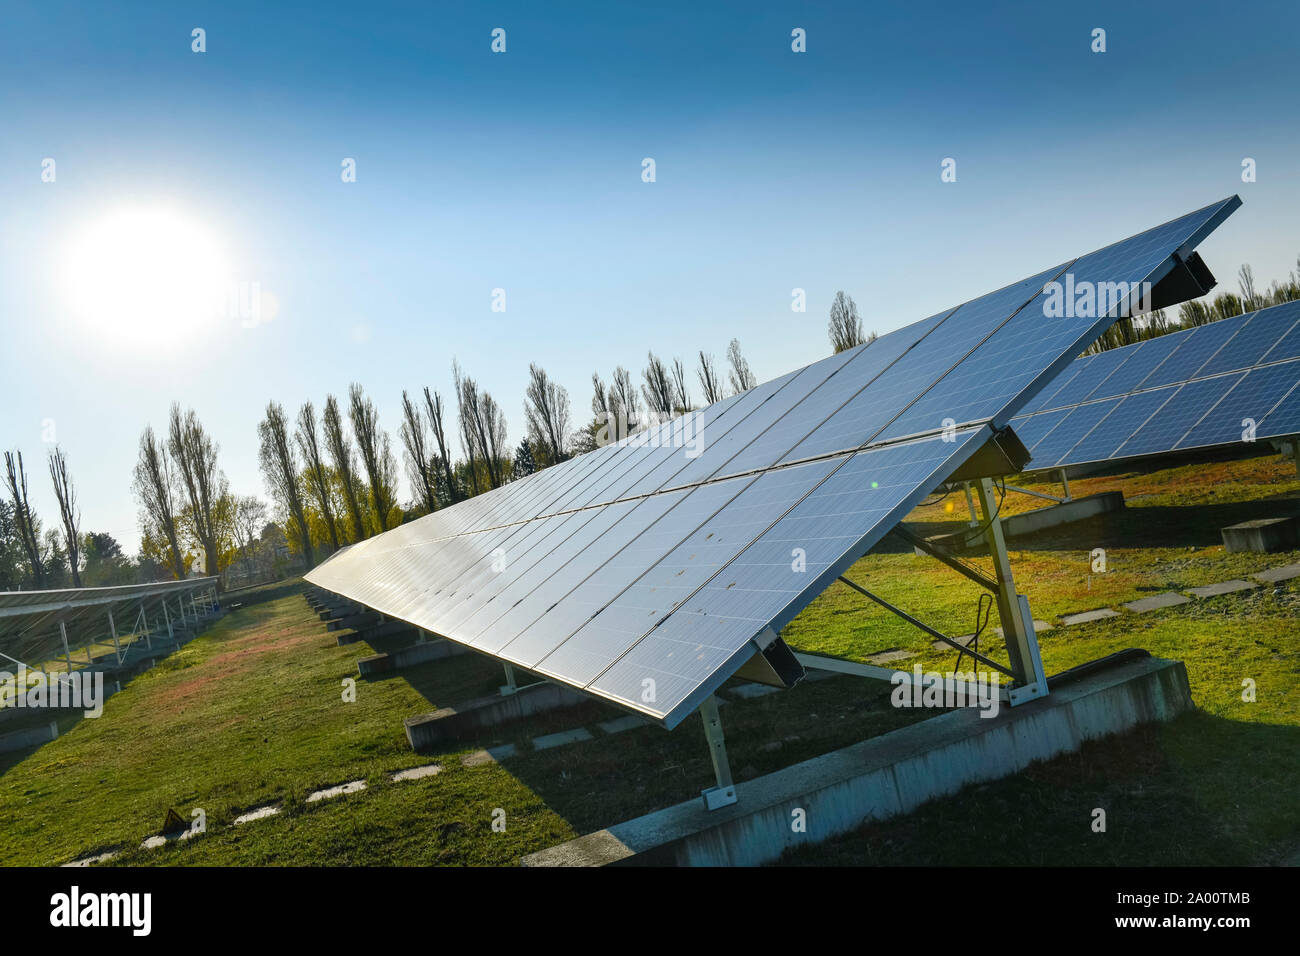 Photovoltaikanlage der GASAG, Marienpark, Lankwitzer Strasse, Mariendorf, Tempelhof-Schoeneberg, Berlin, Deutschland Stock Photo